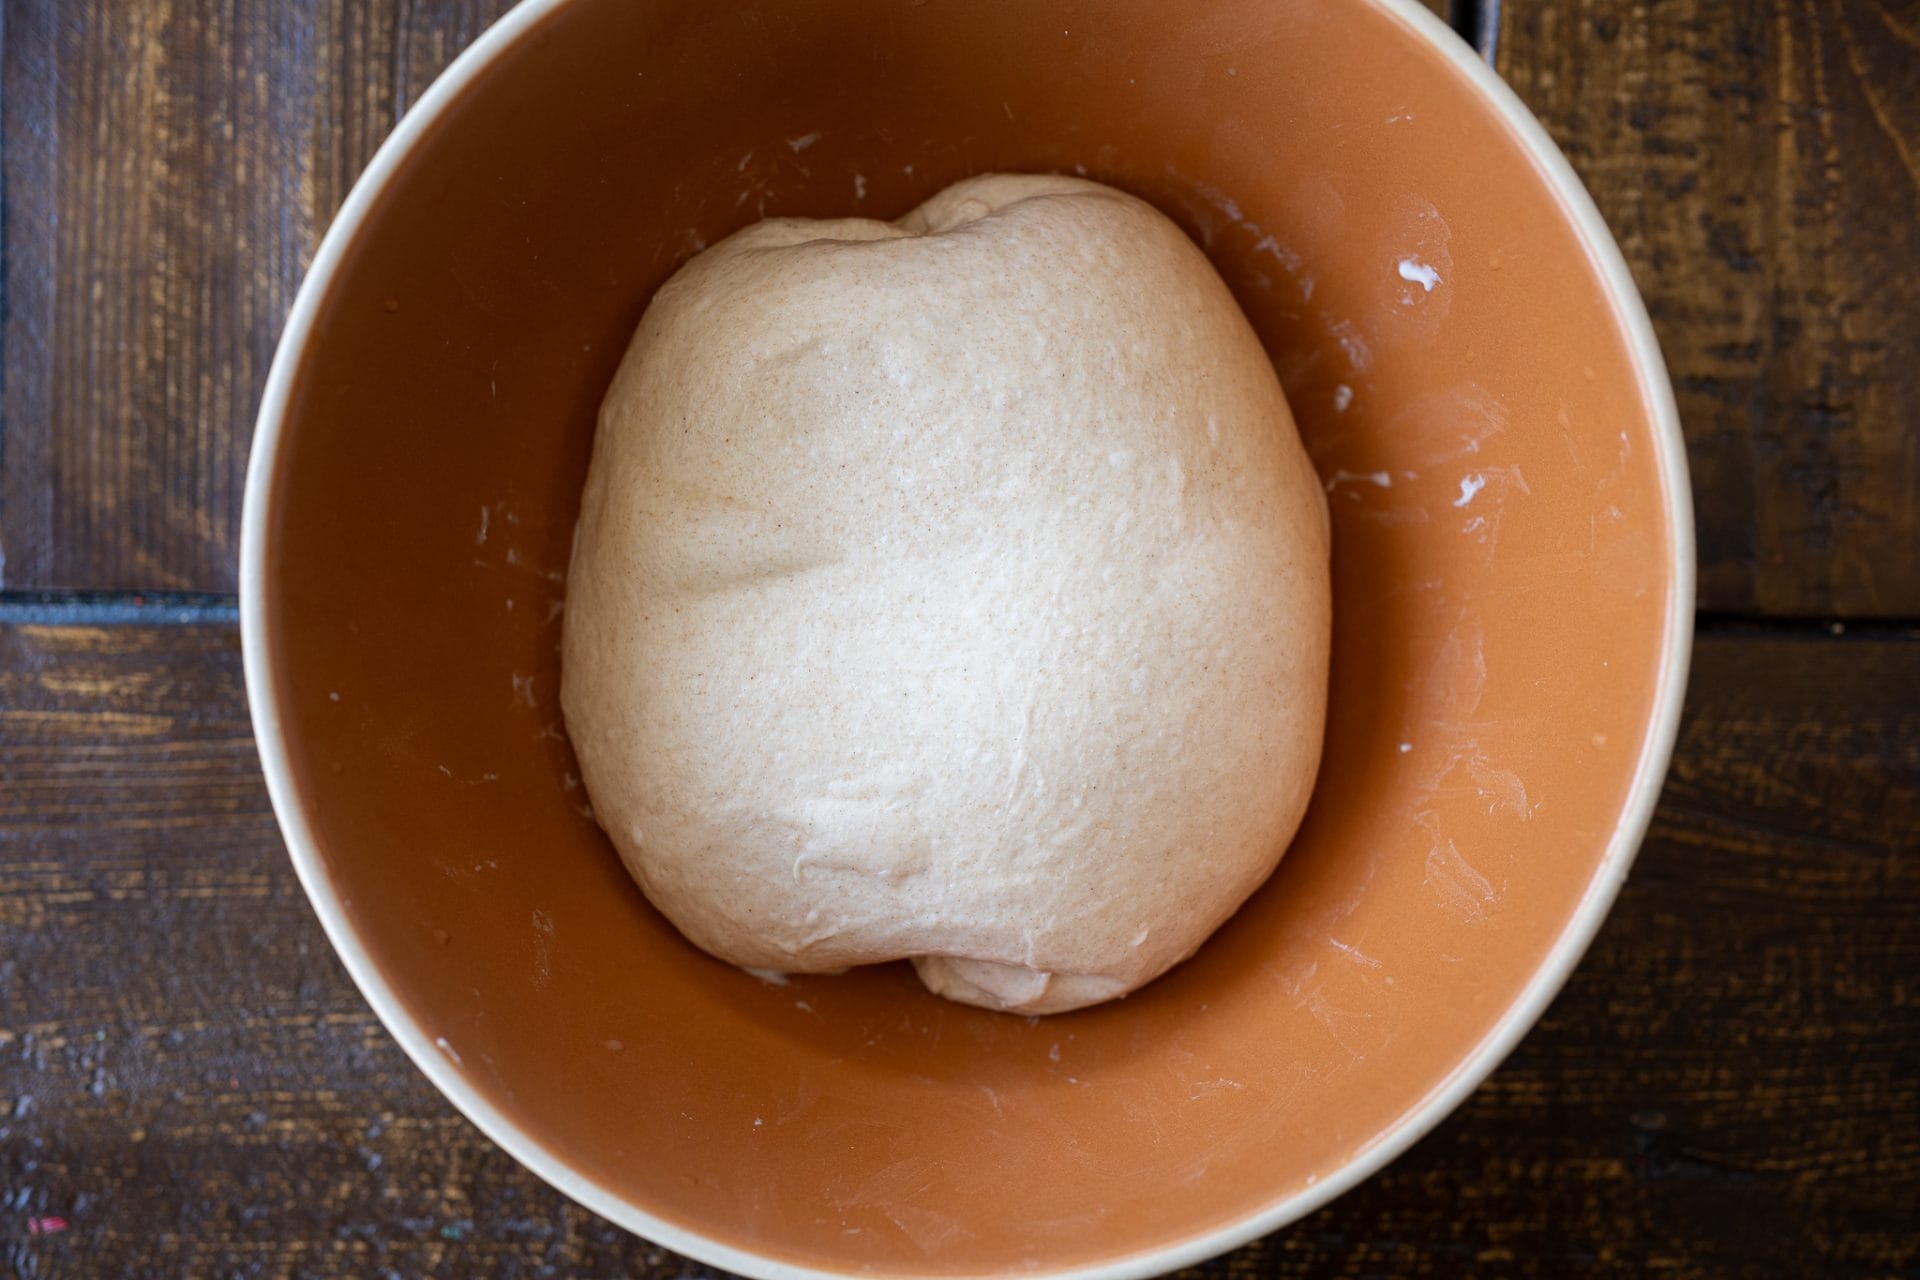 Hot dog bun dough after third stretch and fold